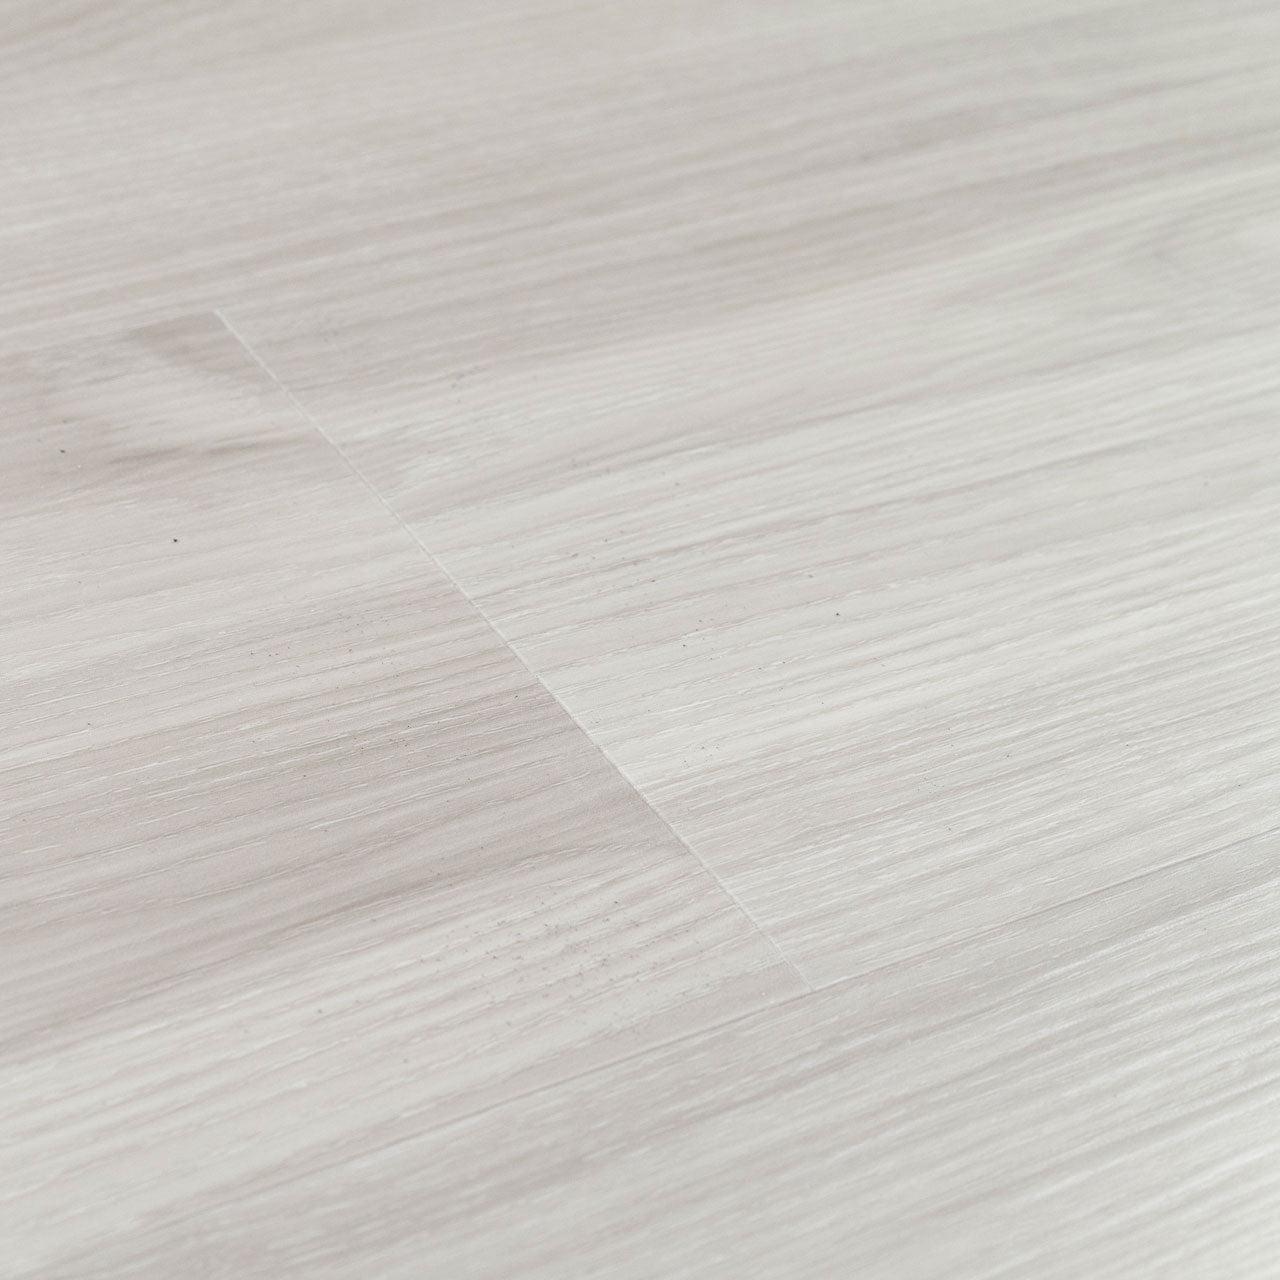 Nroro Flooring - Sterling White Oak - Kapolei Collection - Vinyl Plank  Flooring